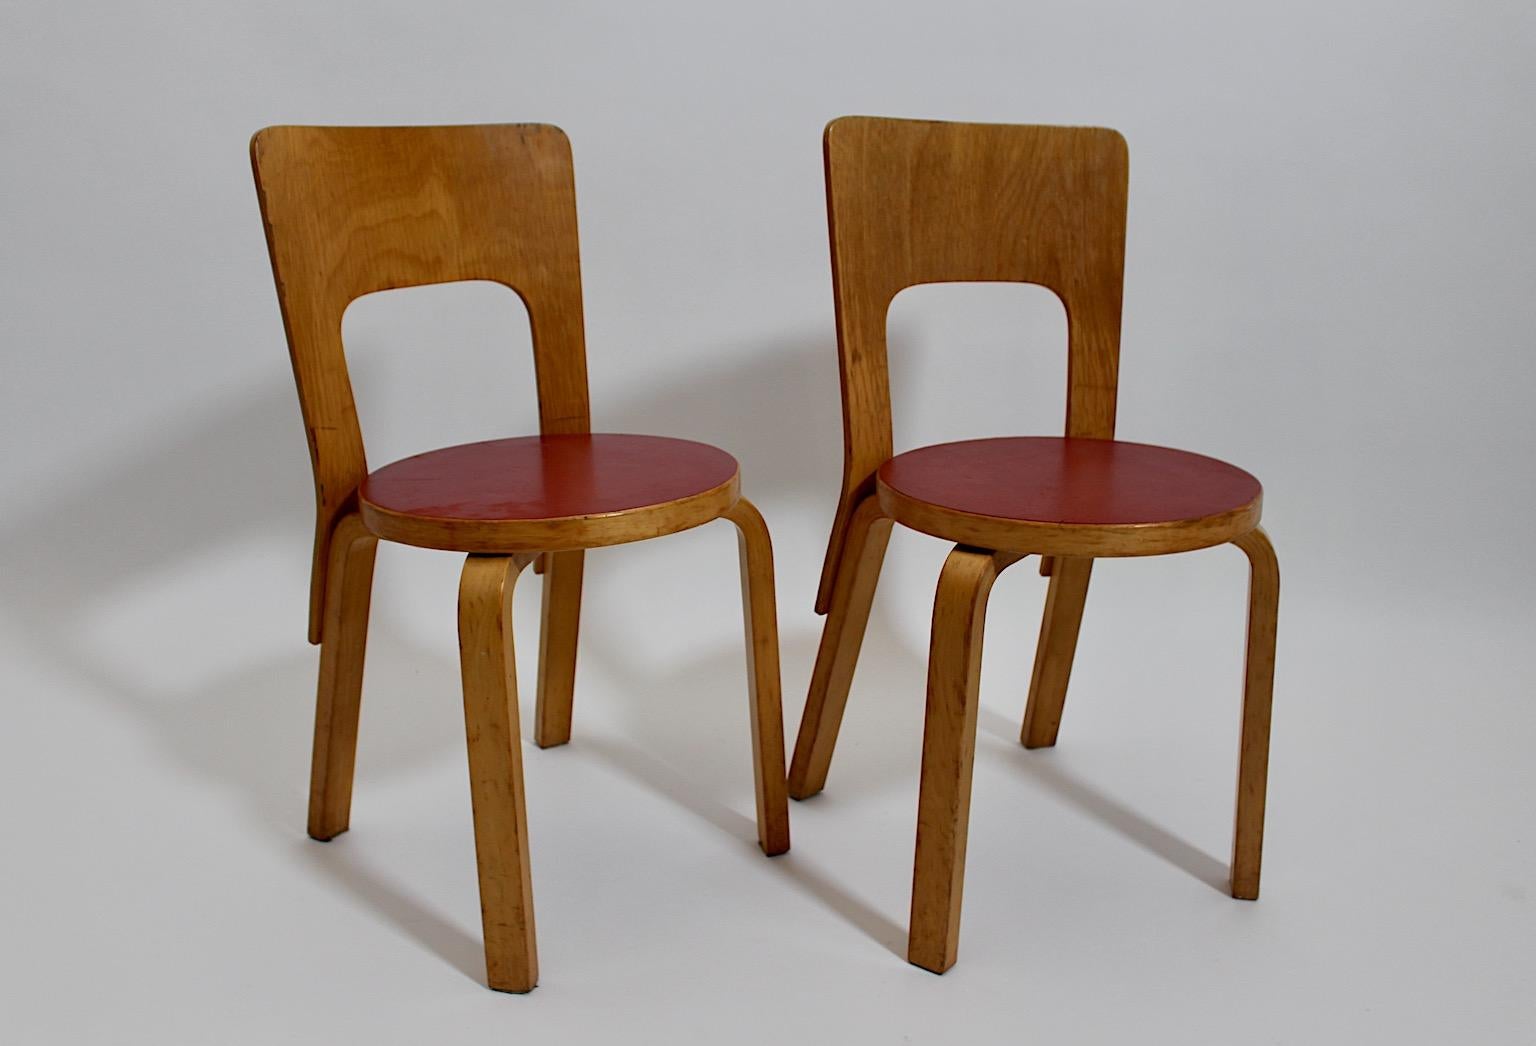 Alvar Aalto Scandinavian modern vintage authentic duo pair model 66 from lacquered birch and red laminate 1930s, Finland.
Un ancien modèle de chaise 66 d'Alvar Aalto pour Artek, au design minimaliste, en bouleau, dans un beau ton brun chaud et avec